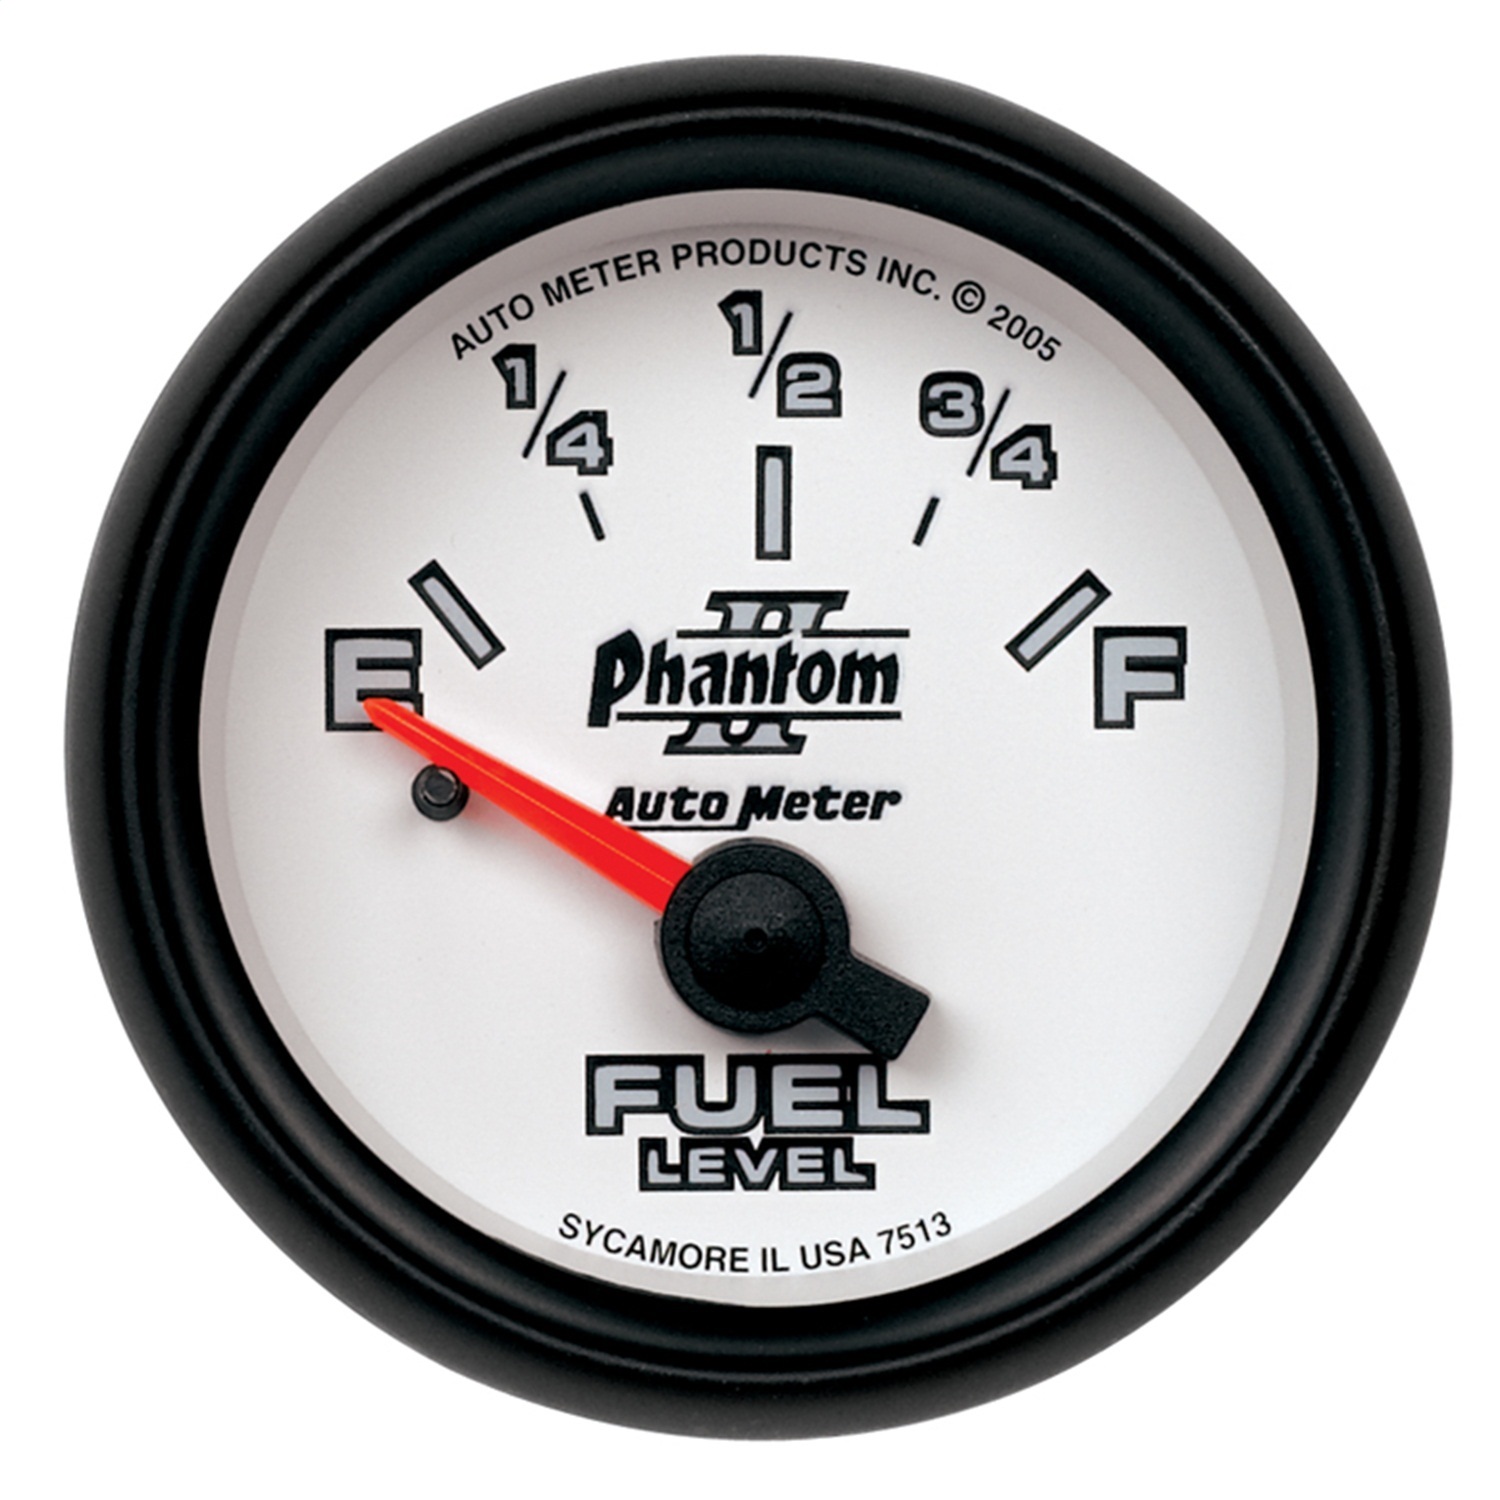 Auto Meter Auto Meter 7513 Phantom II; Electric Fuel Level Gauge